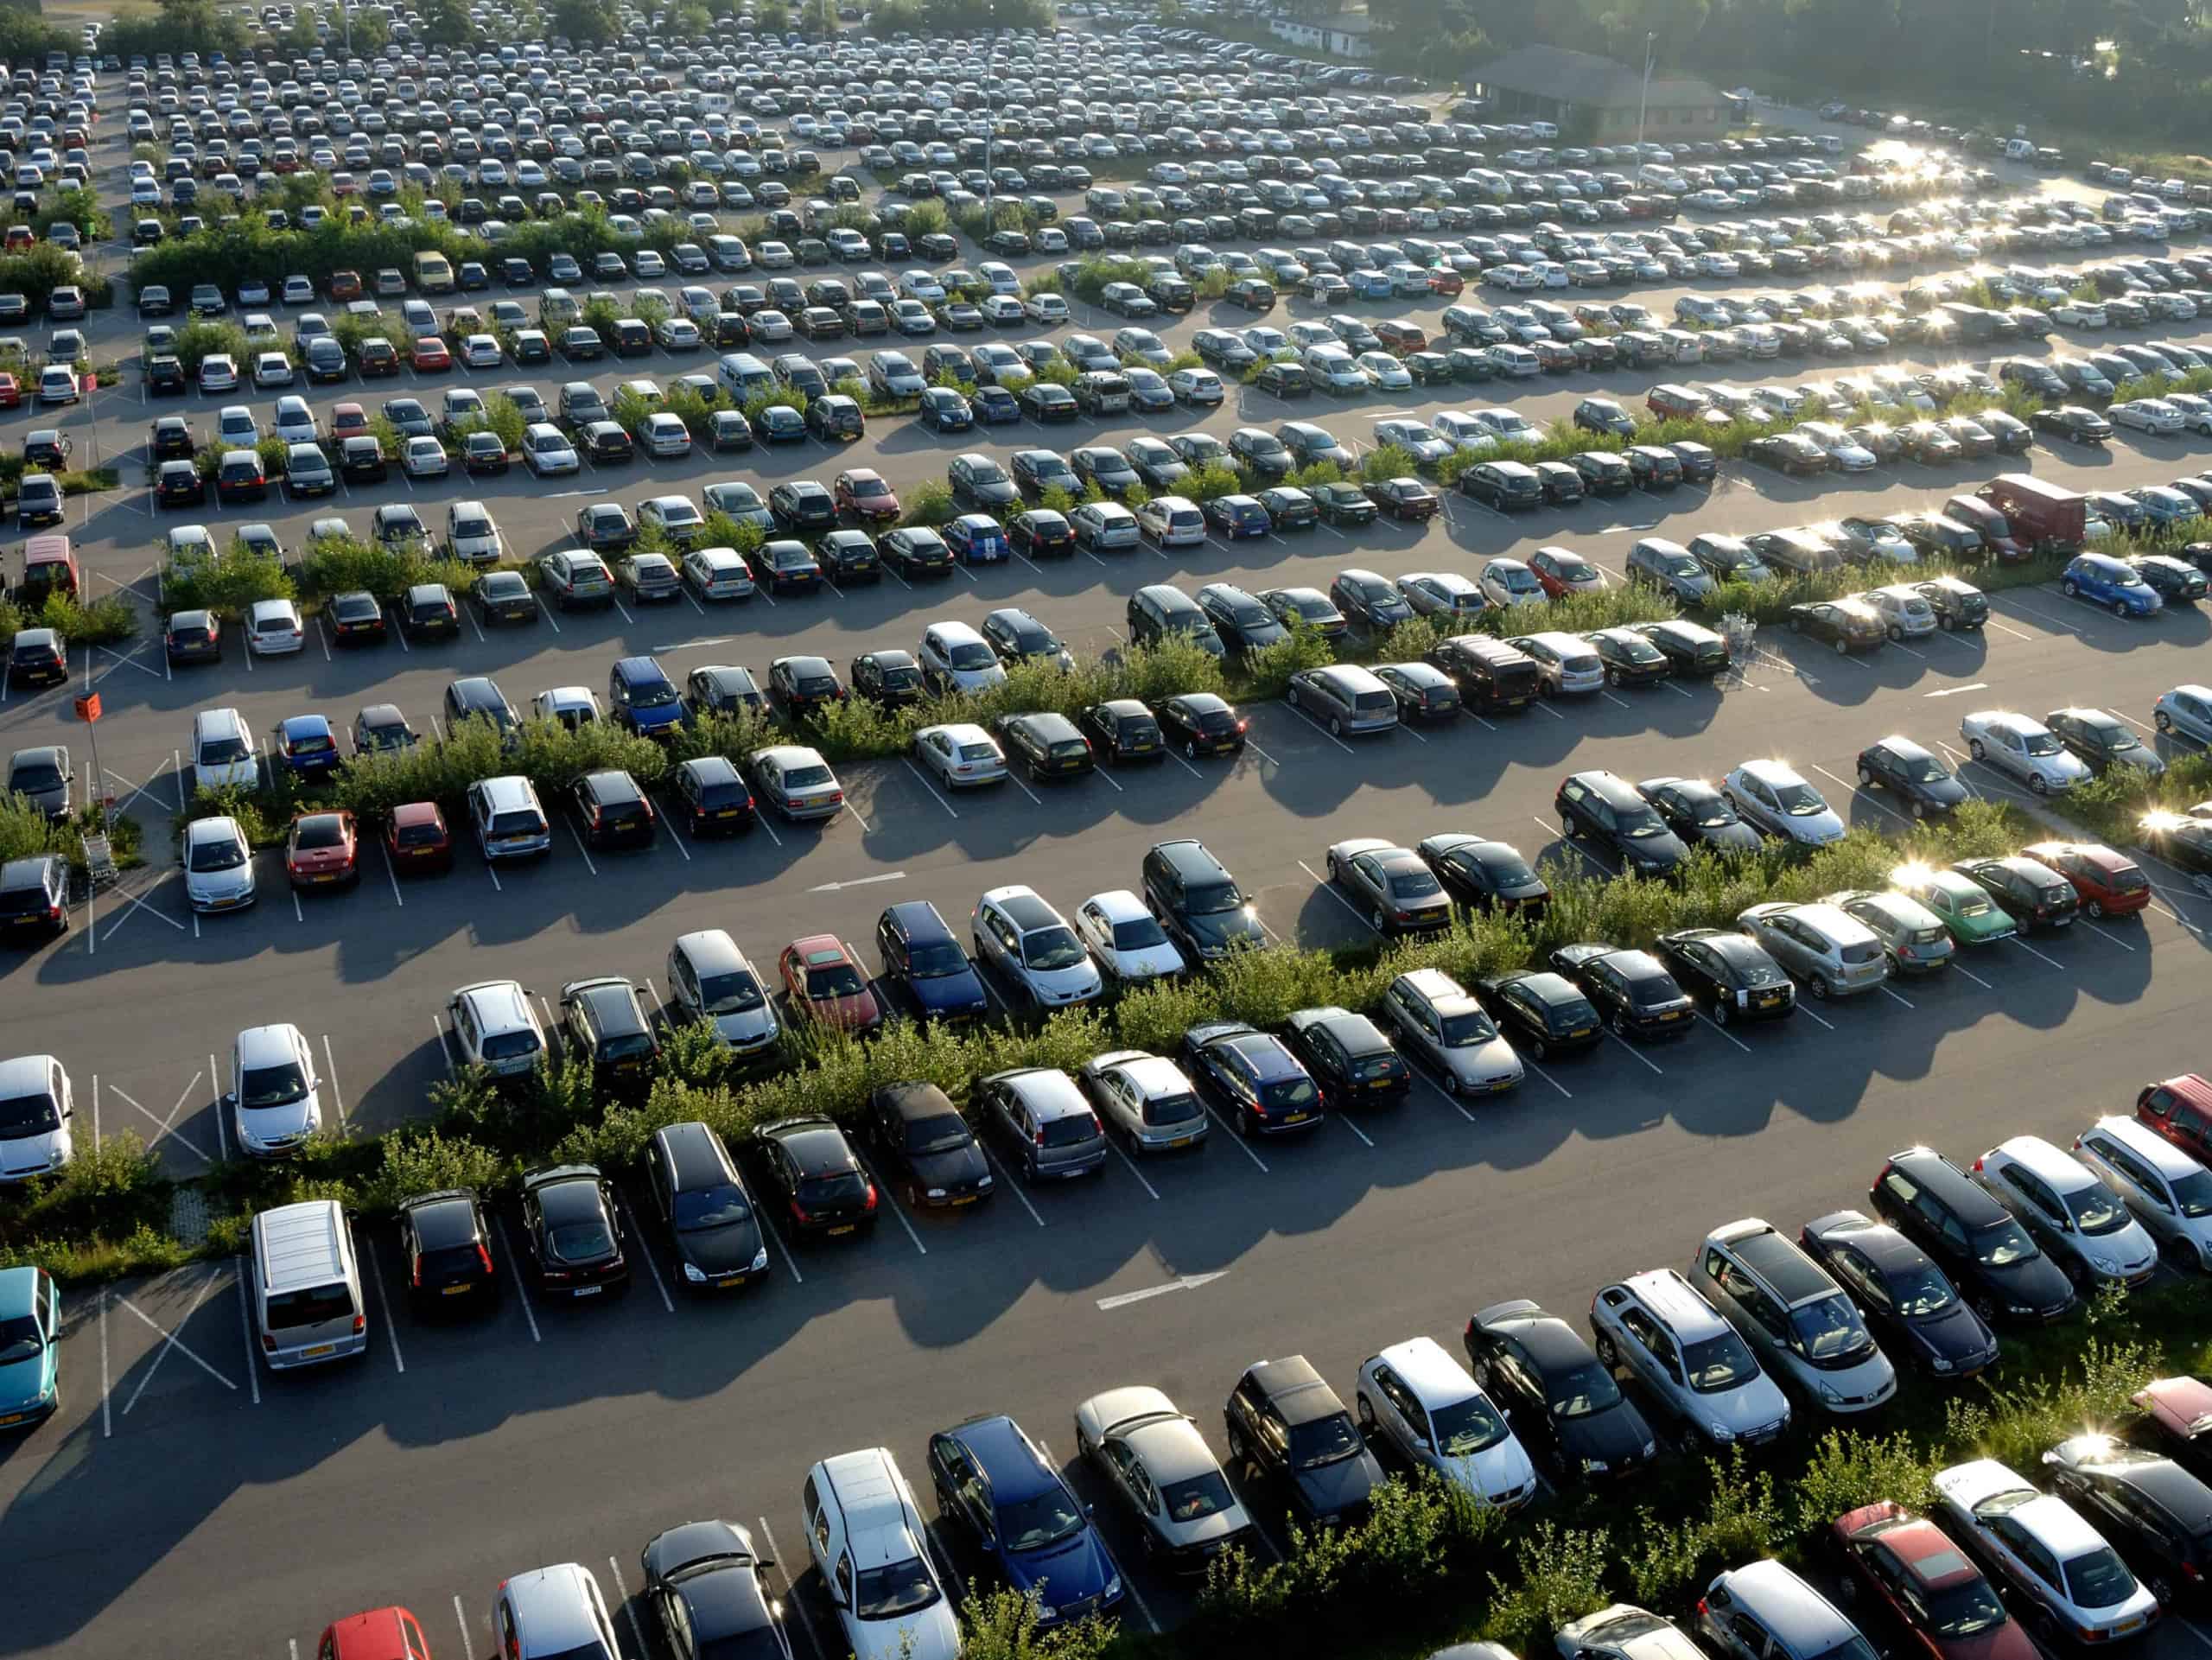 Großparkplatz mit hunderten von Autos